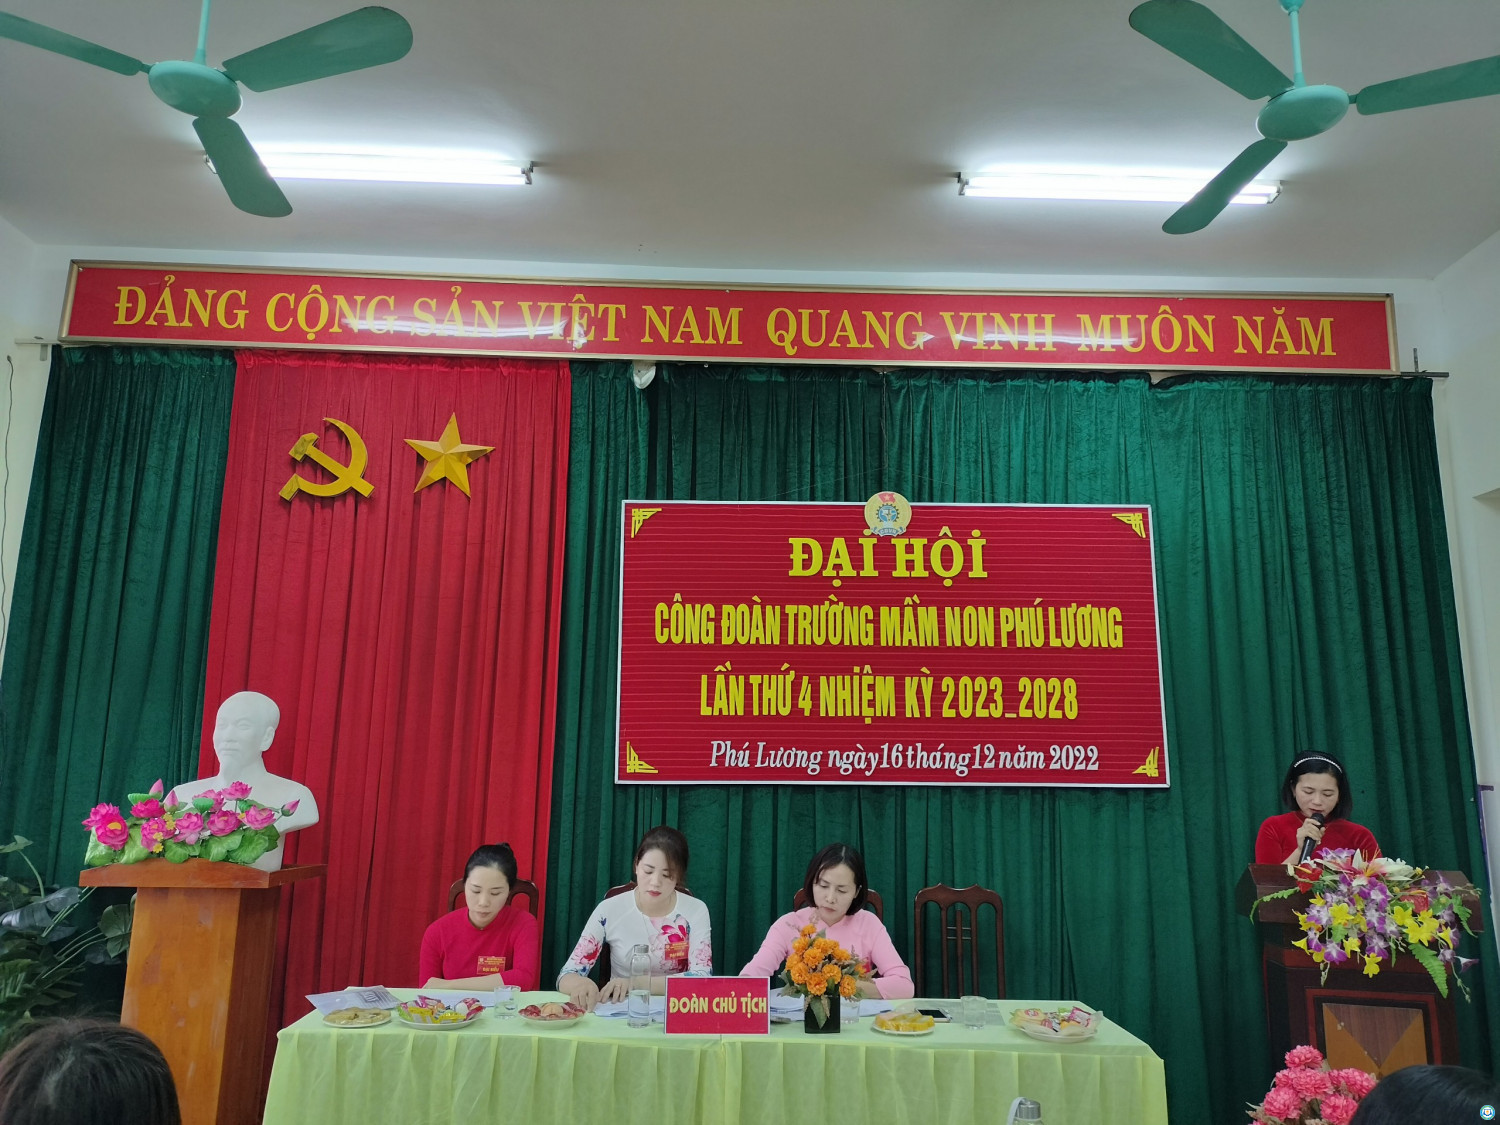 Đồng chí Dương Thị Thảo Phó chủ tịch Công đoàn khoá 3 lên phát biểu